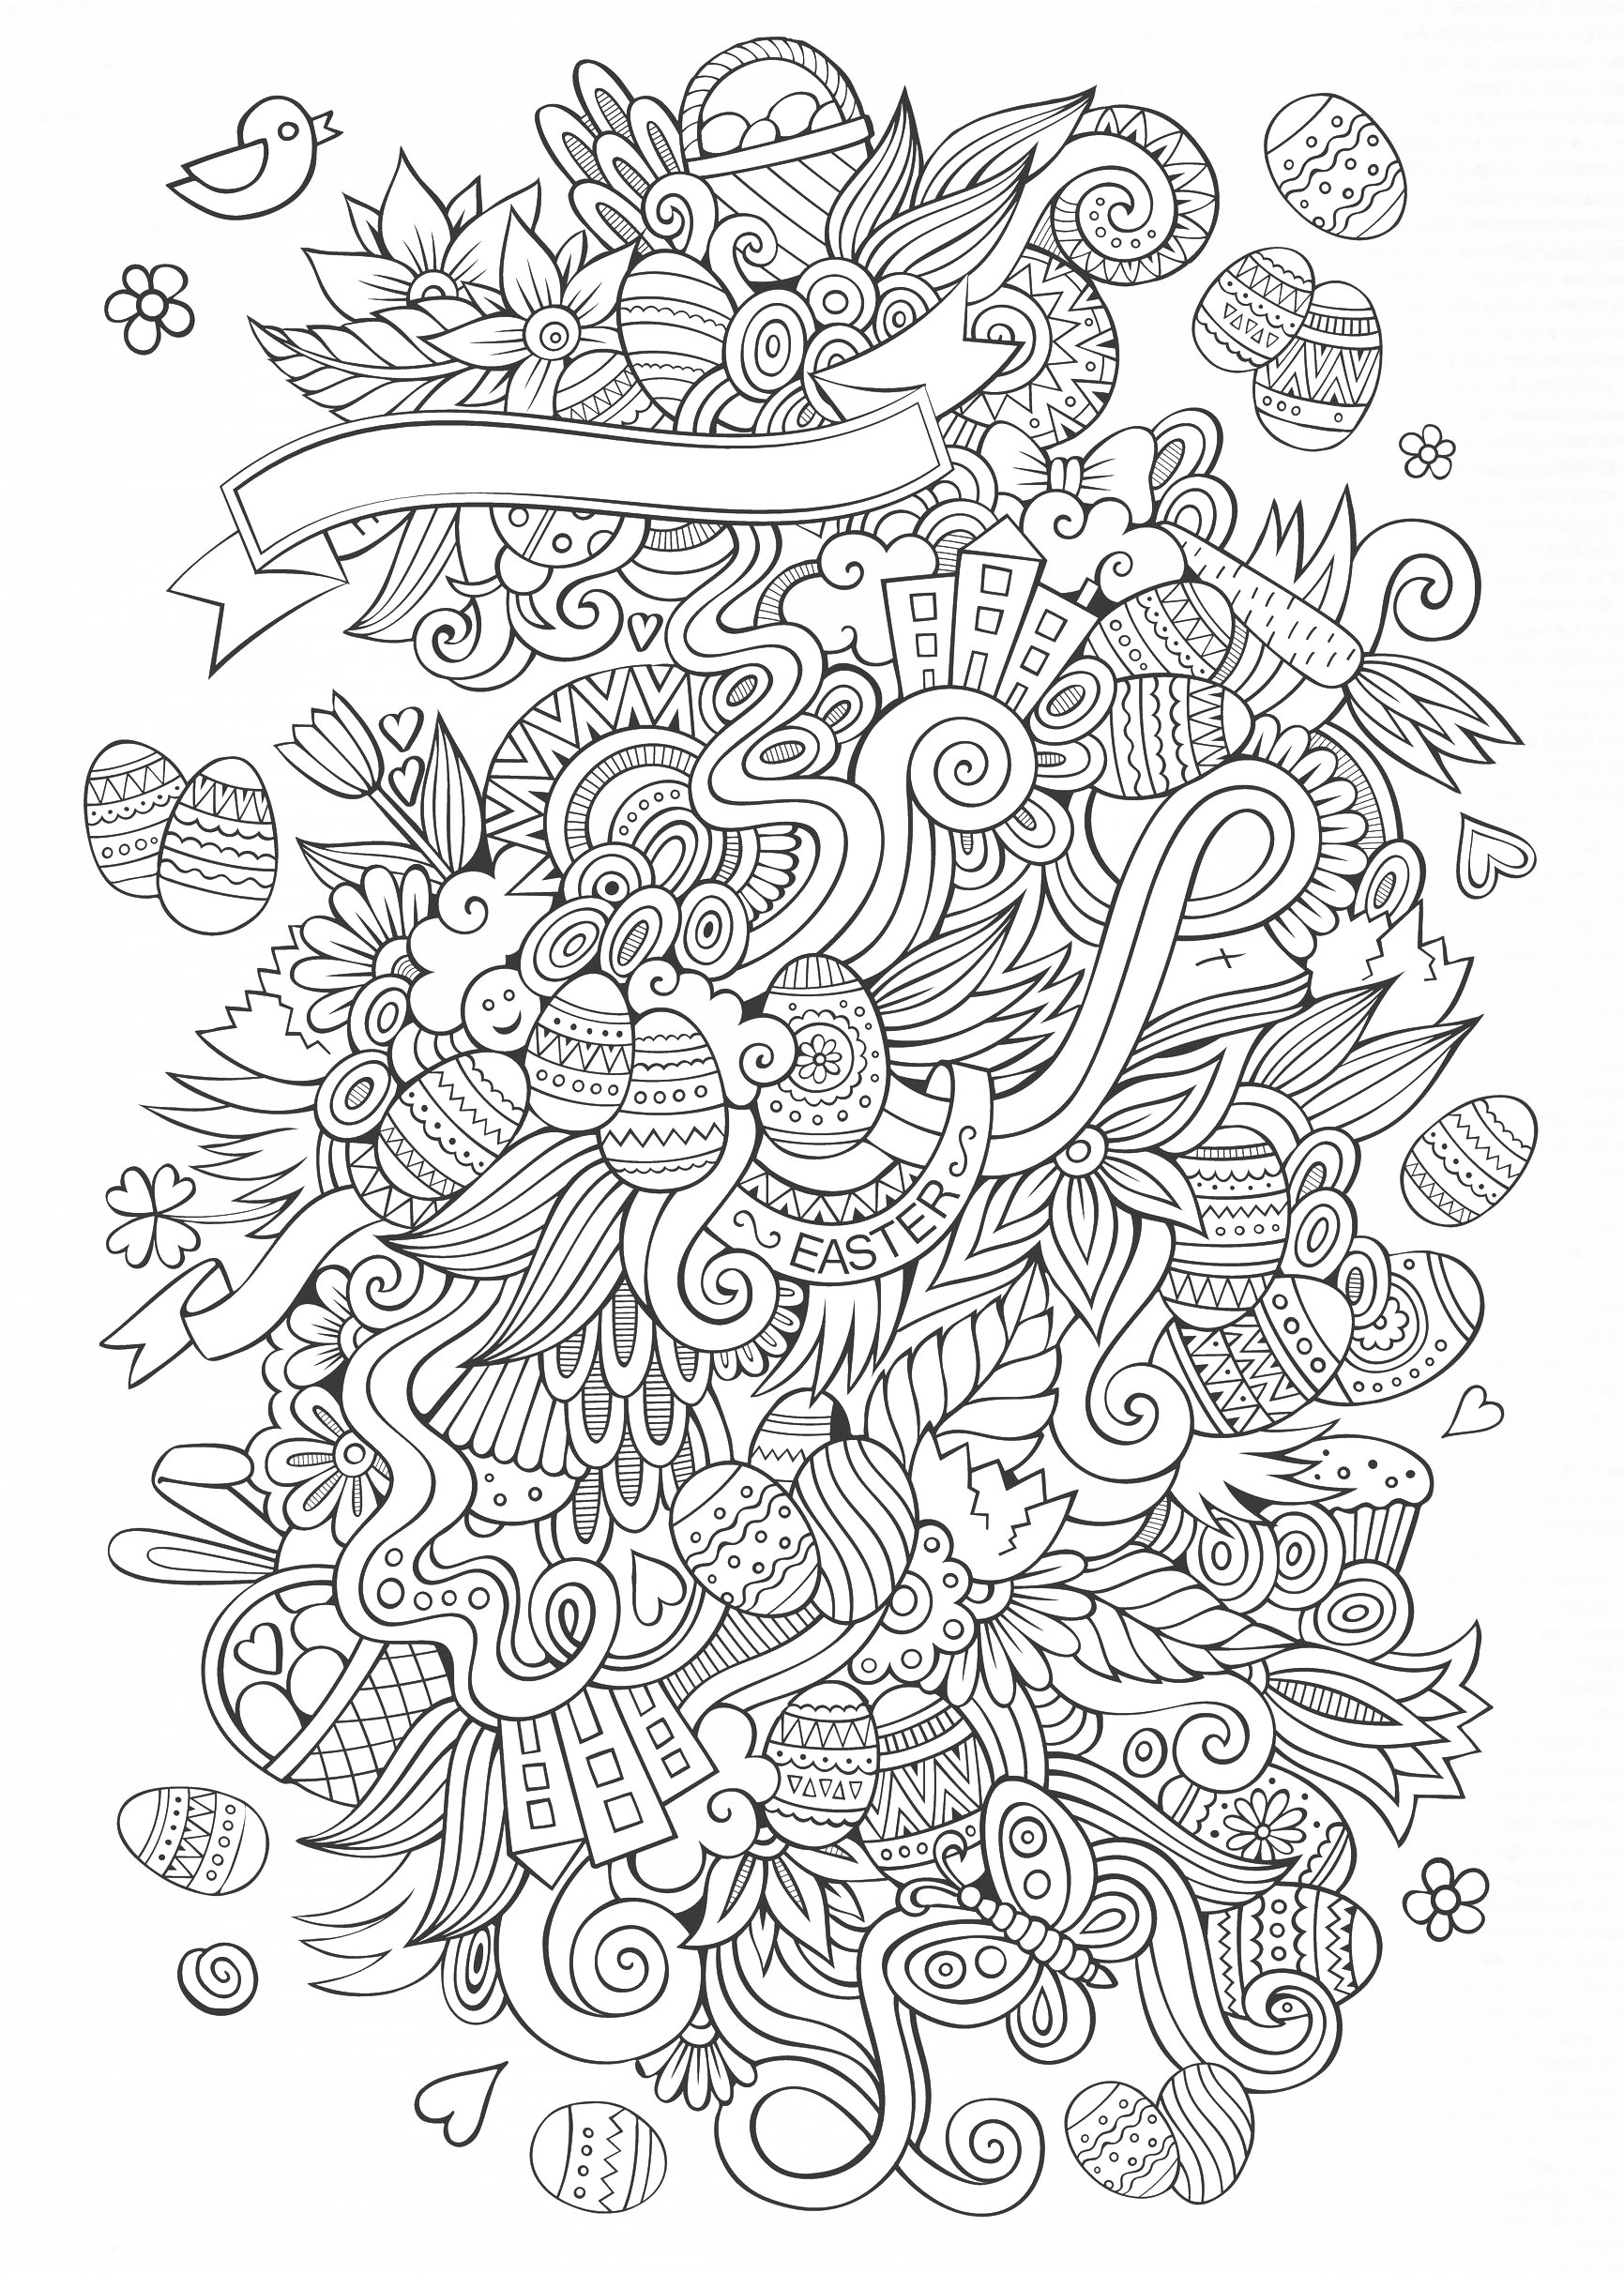 Un dessin assez complexe, pour Pâques, Artiste : Olga Kostenko   Source : 123rf